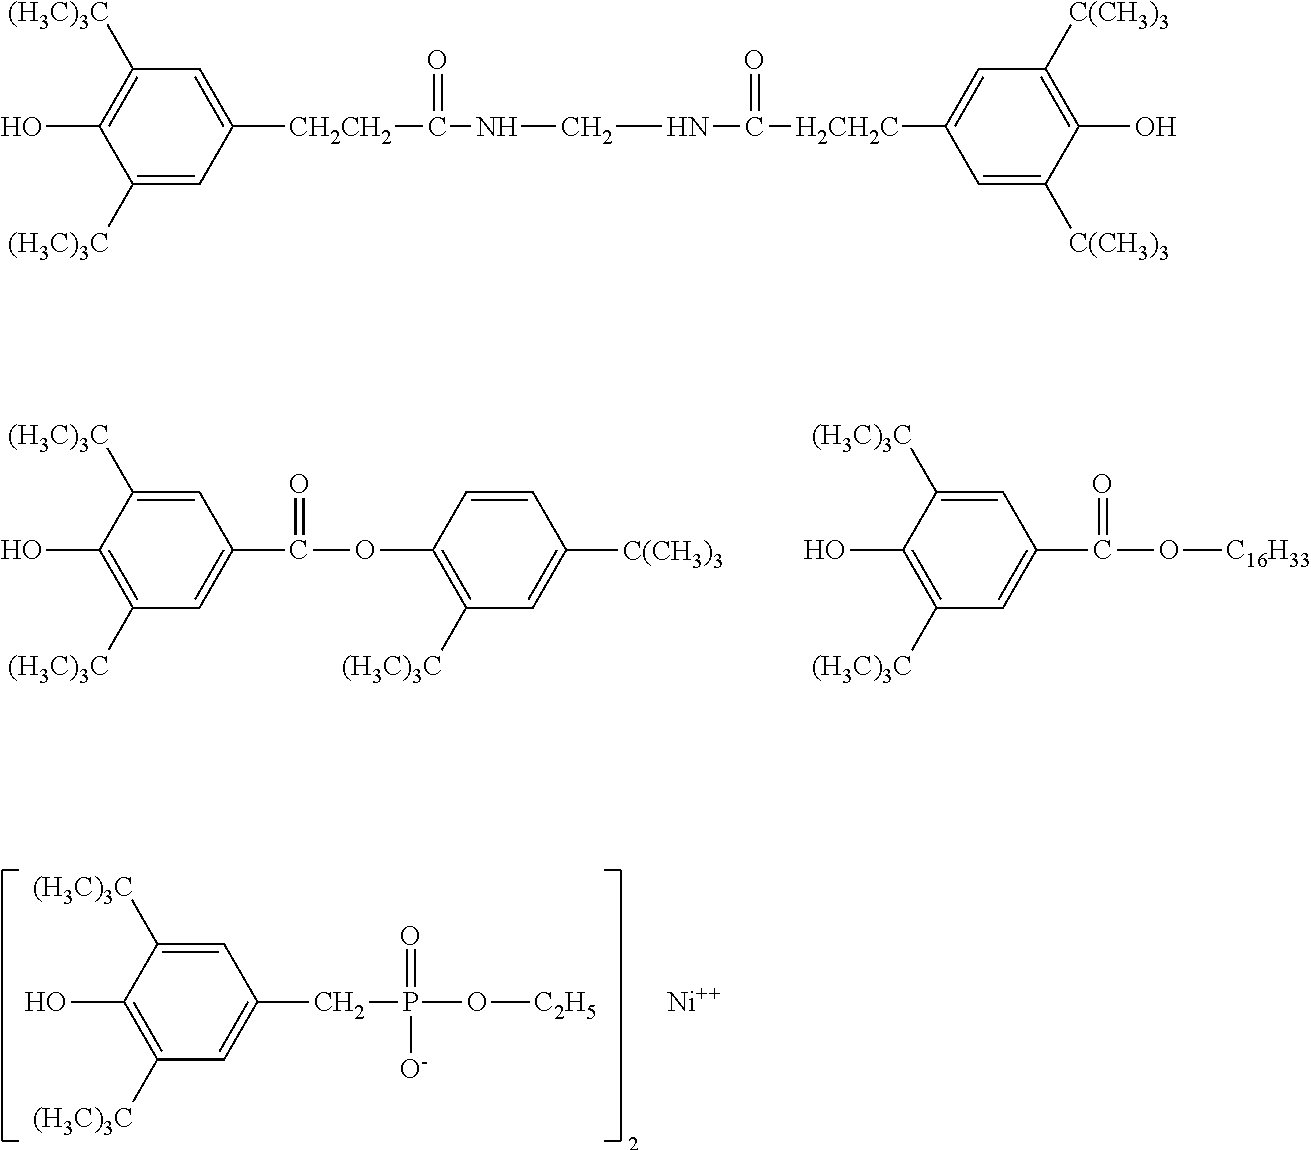 B-staged Bis Benzocyclobutene Monomer